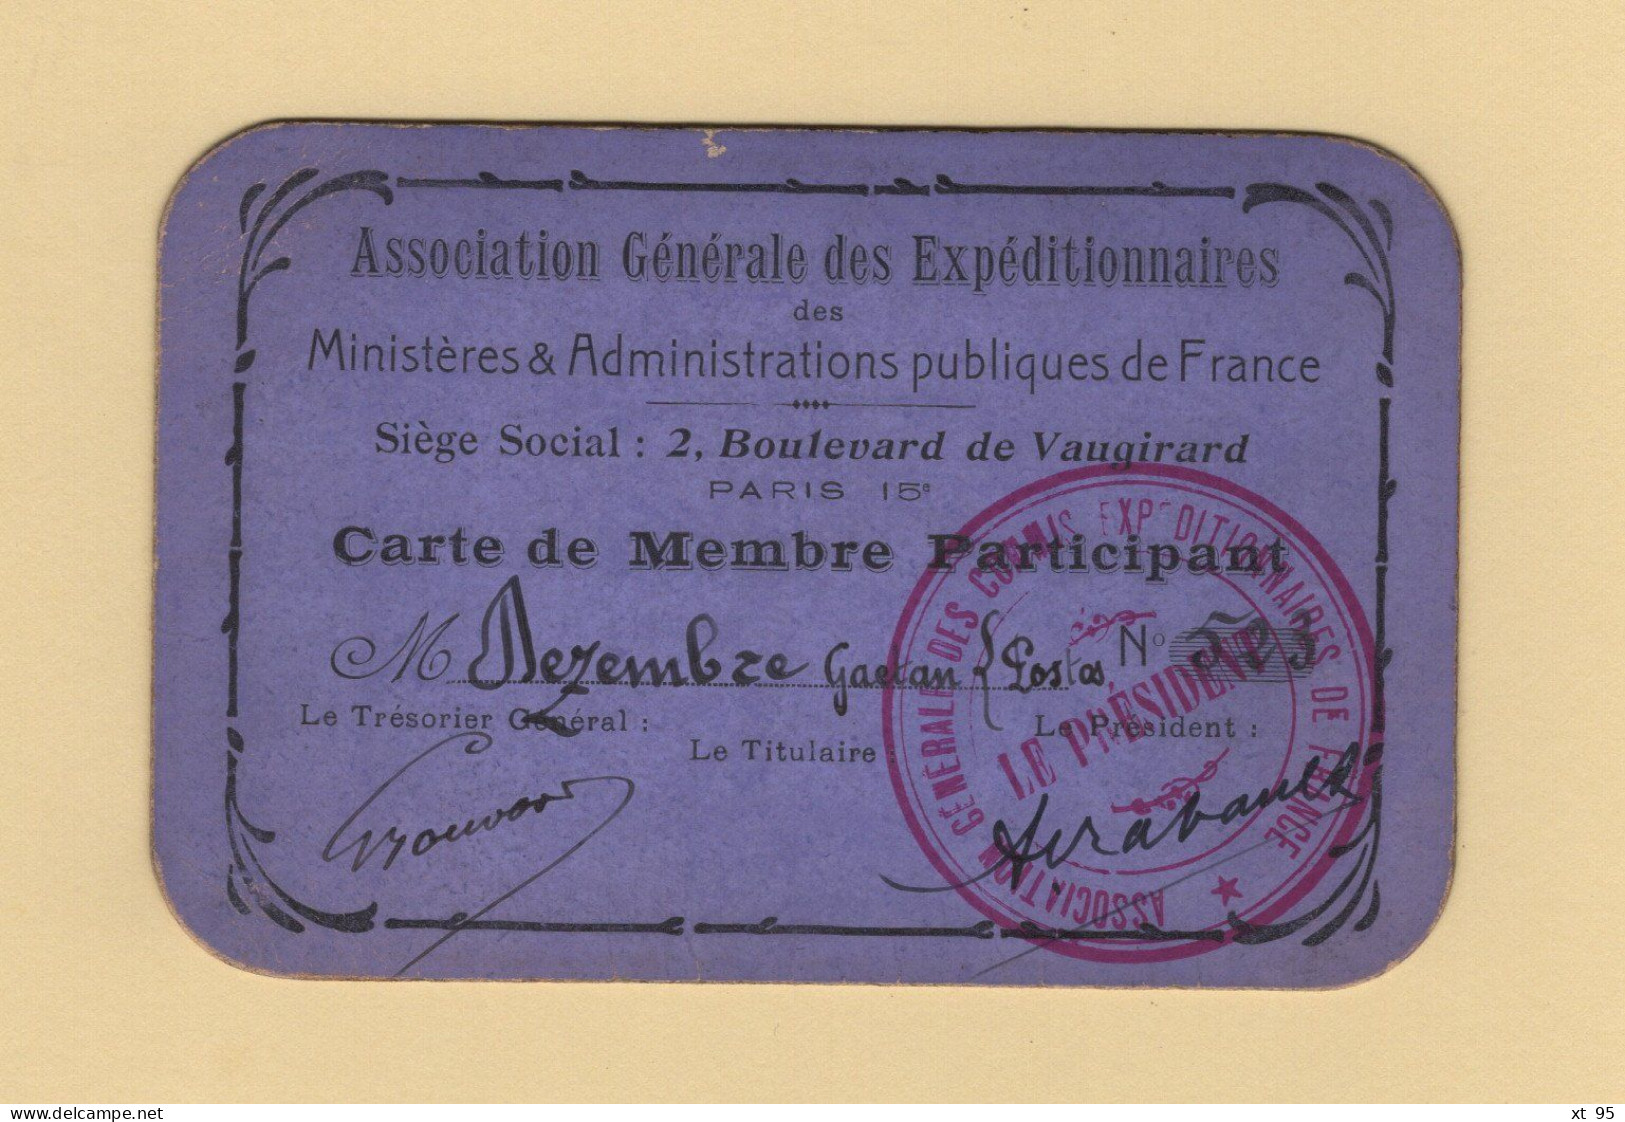 Carte De Membre Participant - Association Generale Des Expeditionnaires - Commis Expeditionnaire - Postes - Lidmaatschapskaarten